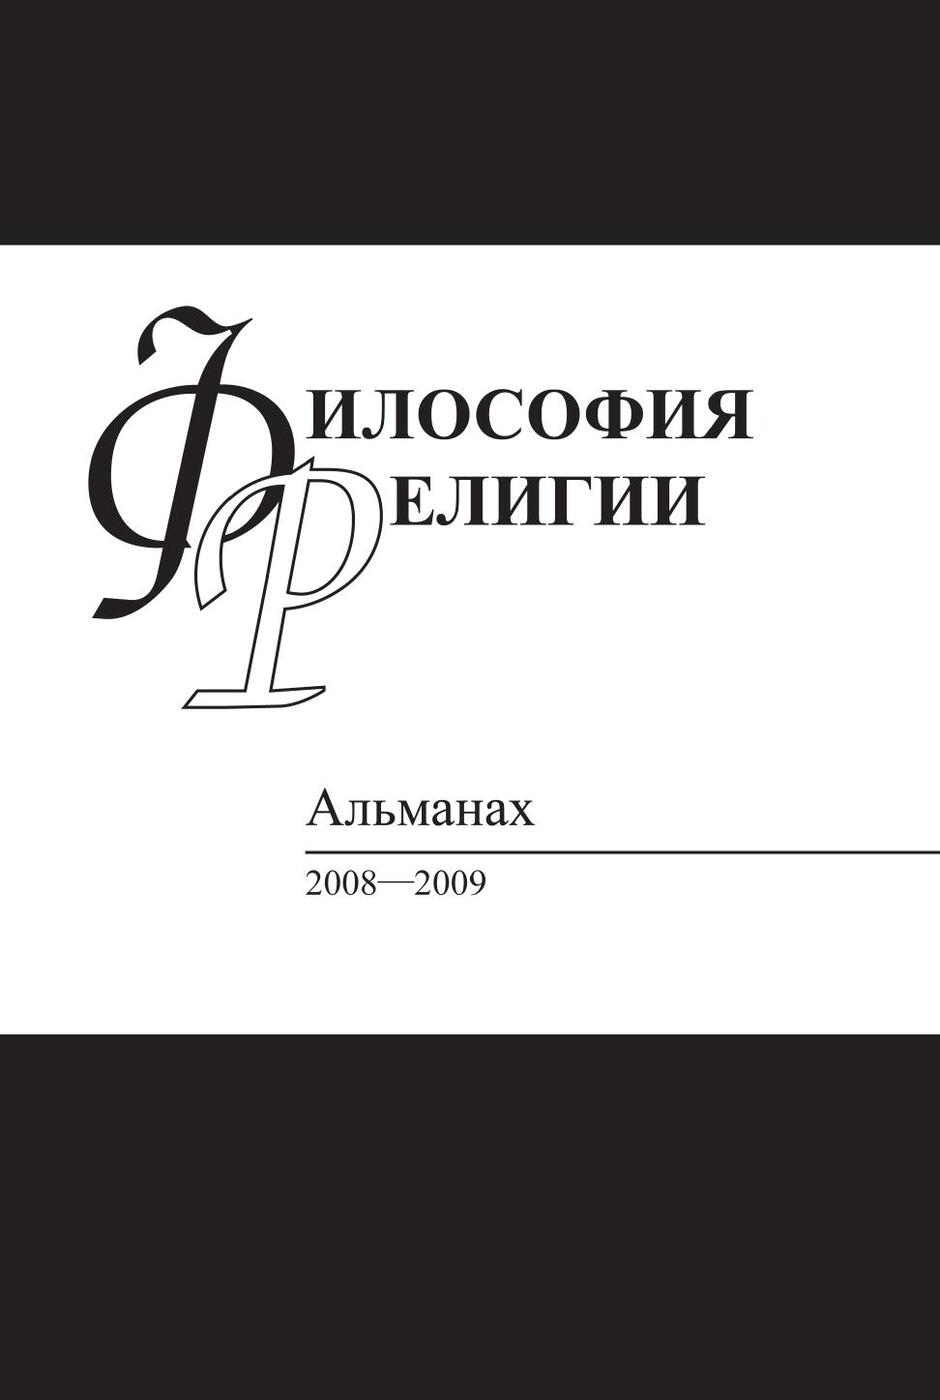 фото Книга философия религии: альманах, 2008-2009 языки славянской культуры